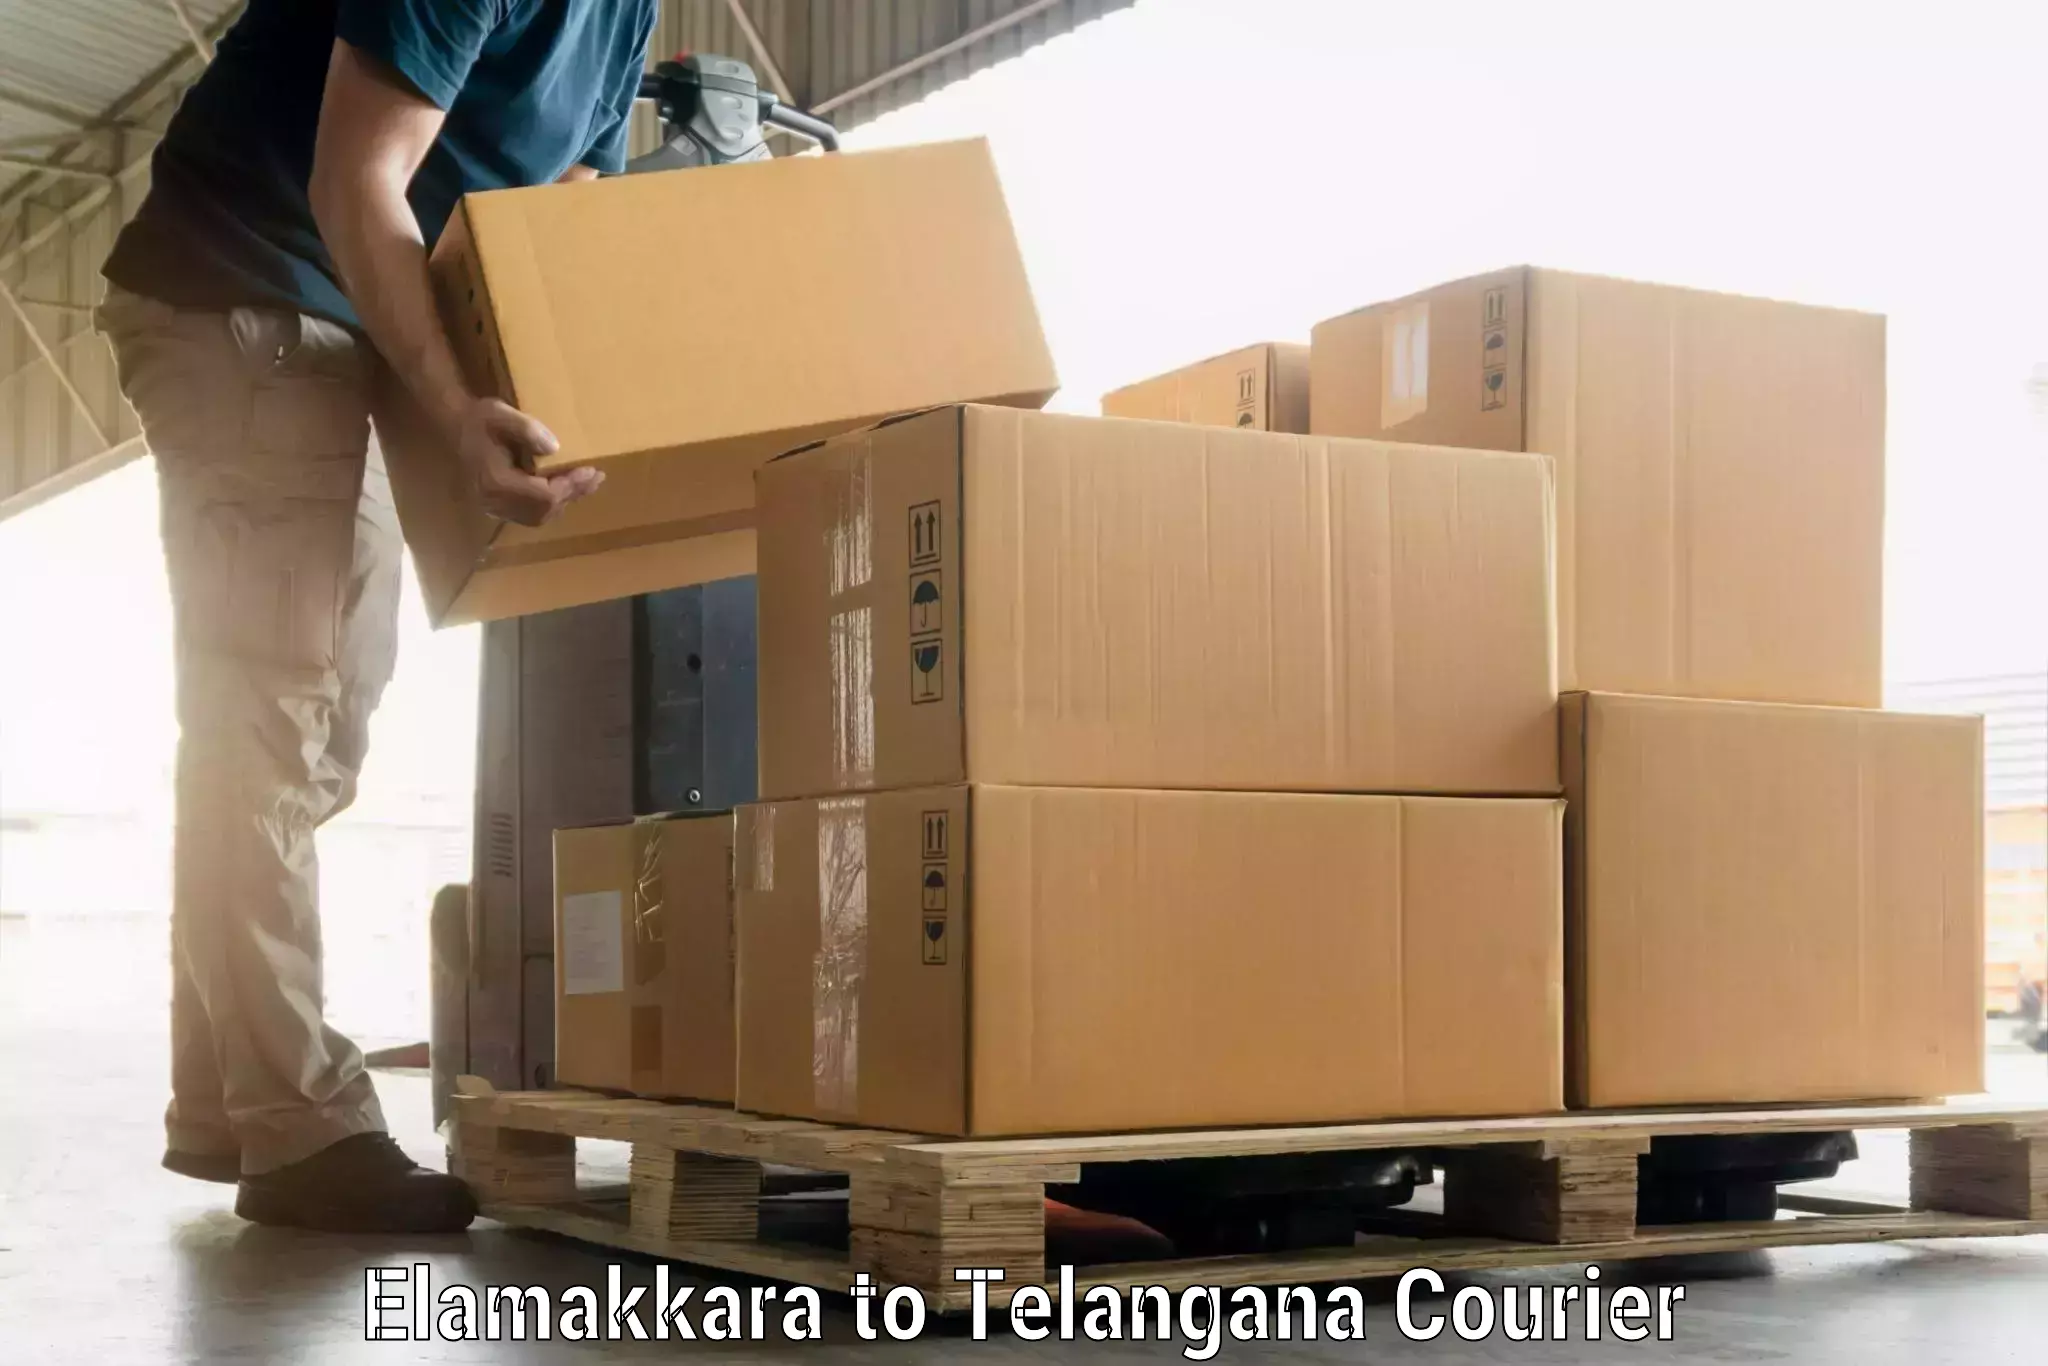 Hassle-free luggage shipping Elamakkara to Kacheguda